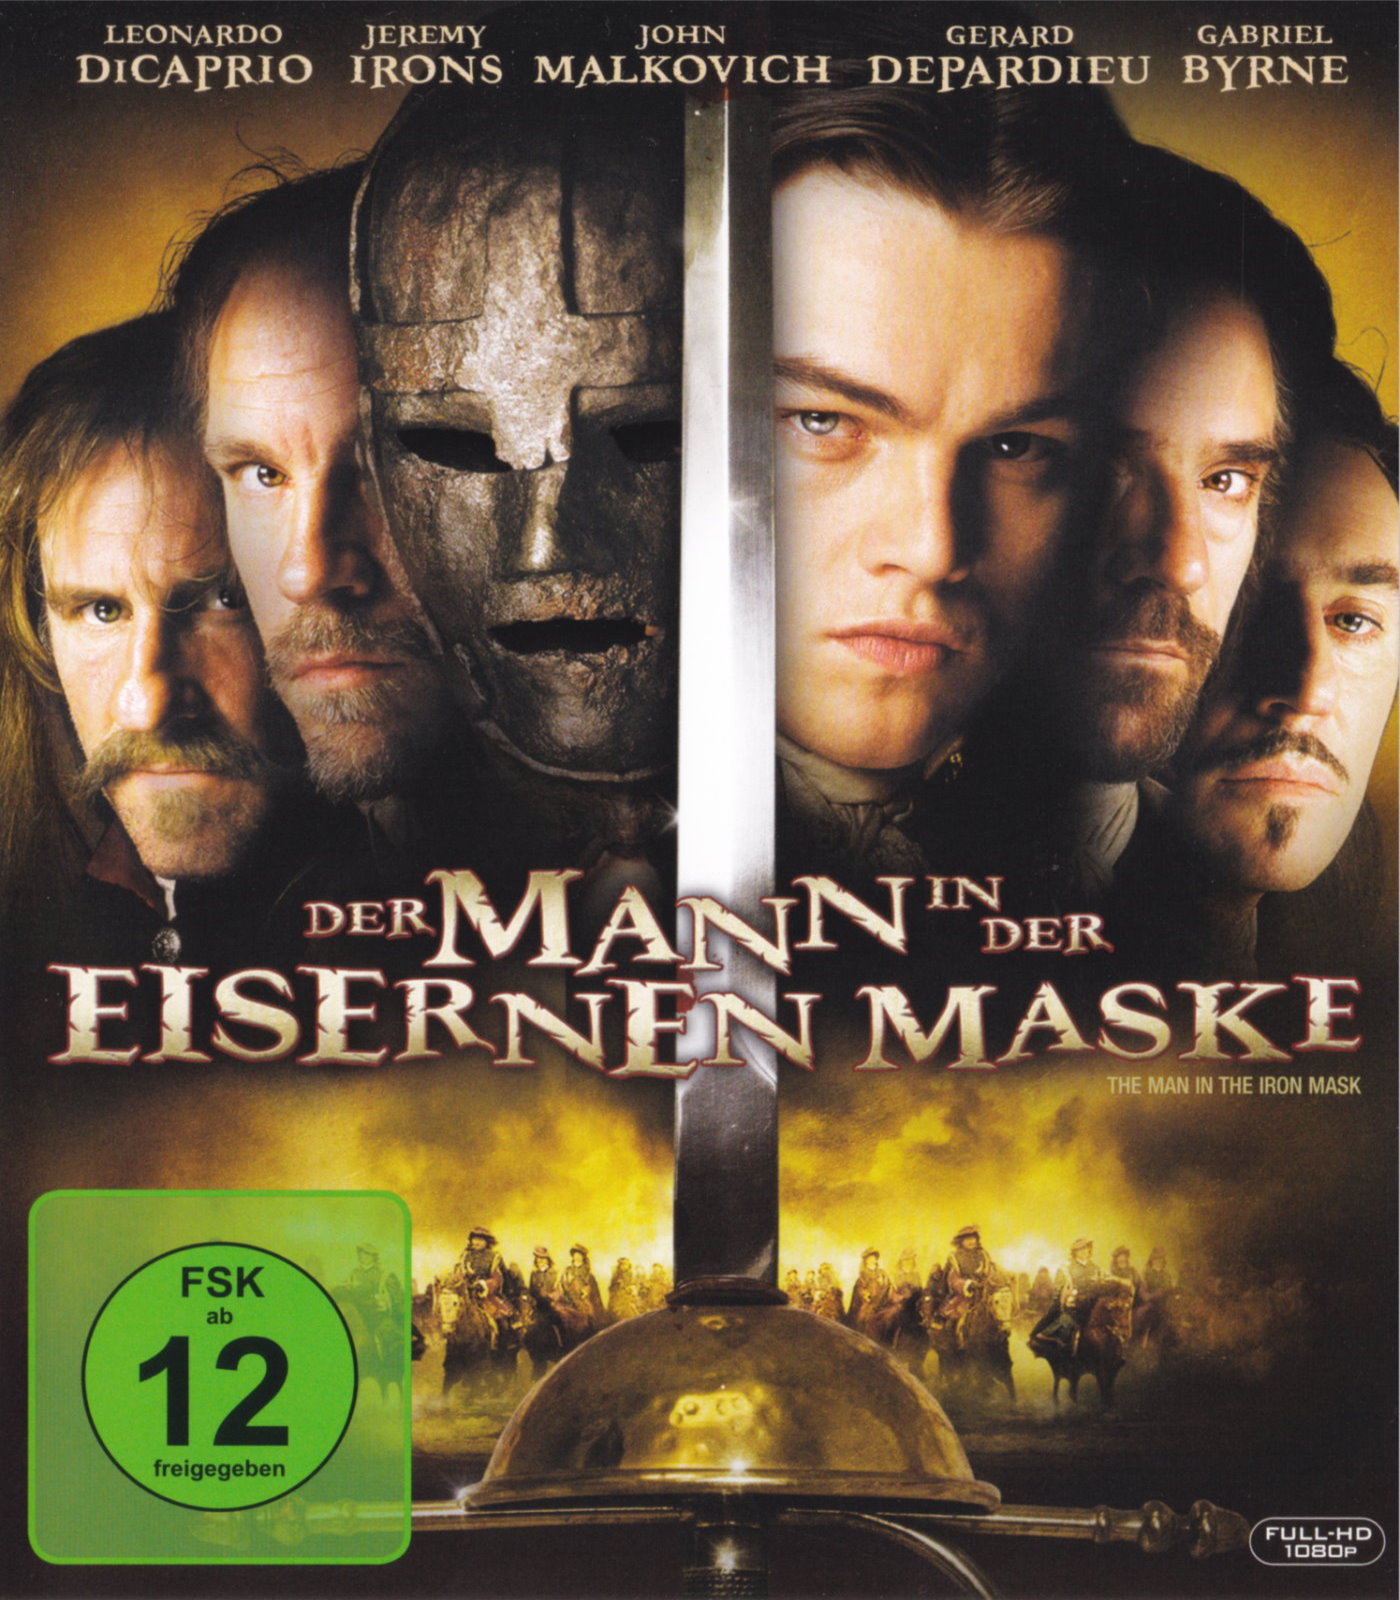 Cover - Der Mann in der eisernen Maske.jpg